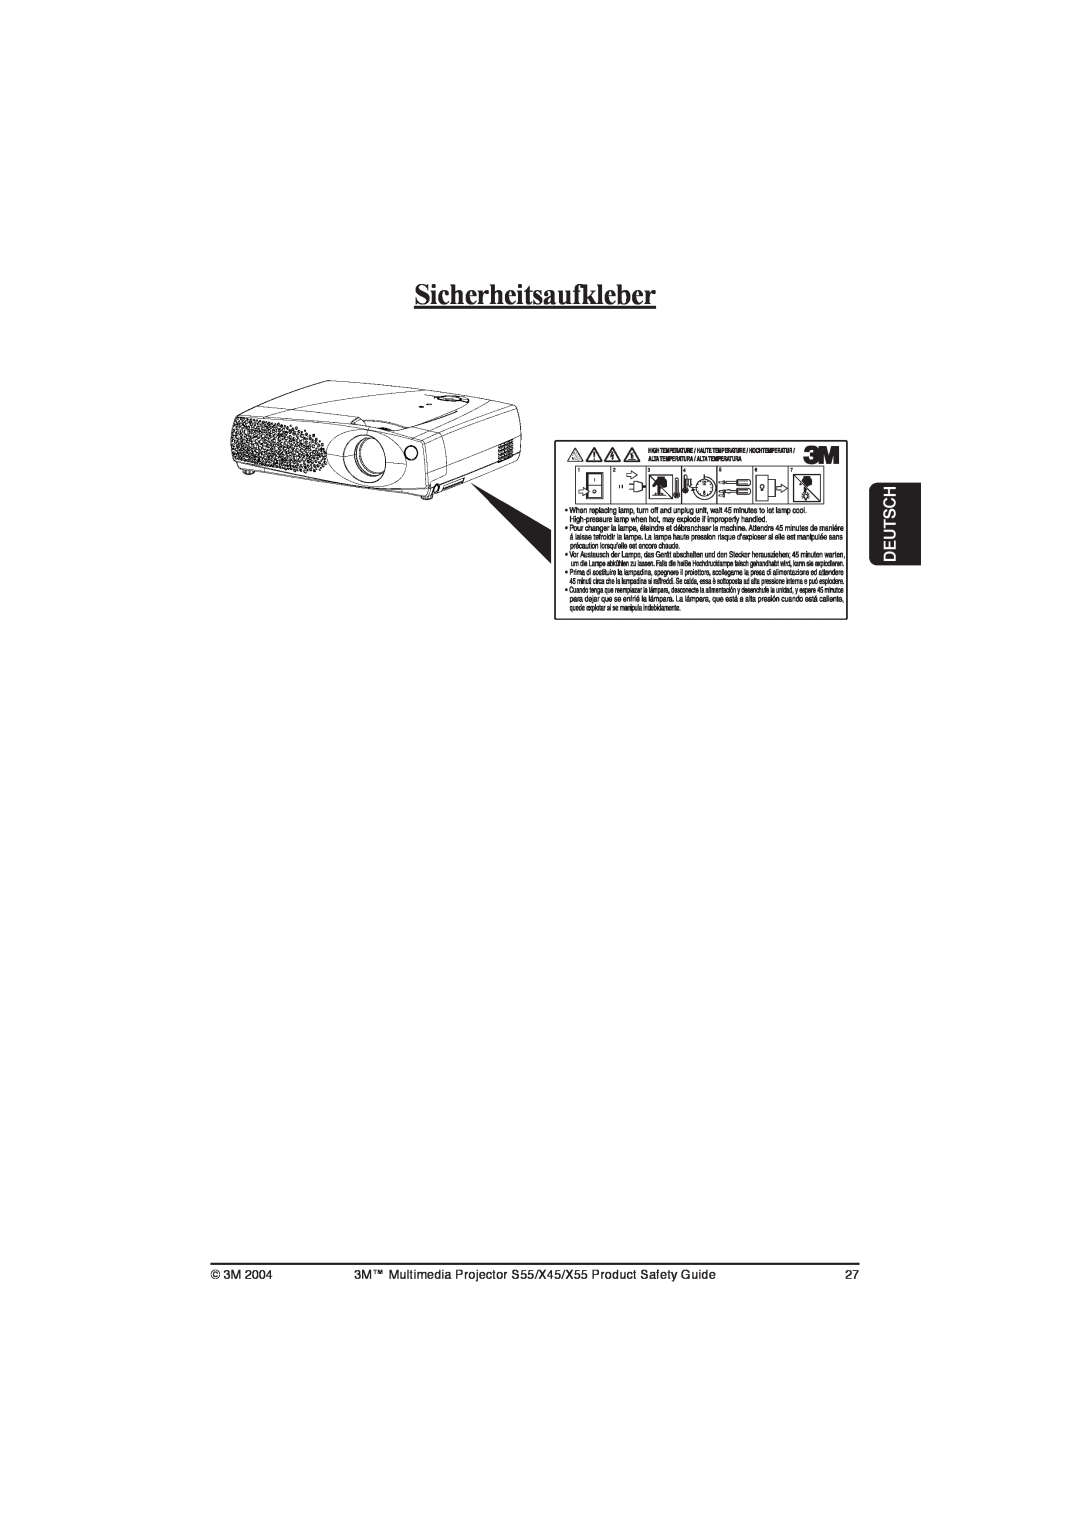 3M X45, S55, X55 manual Sicherheitsaufkleber, Deutsch 